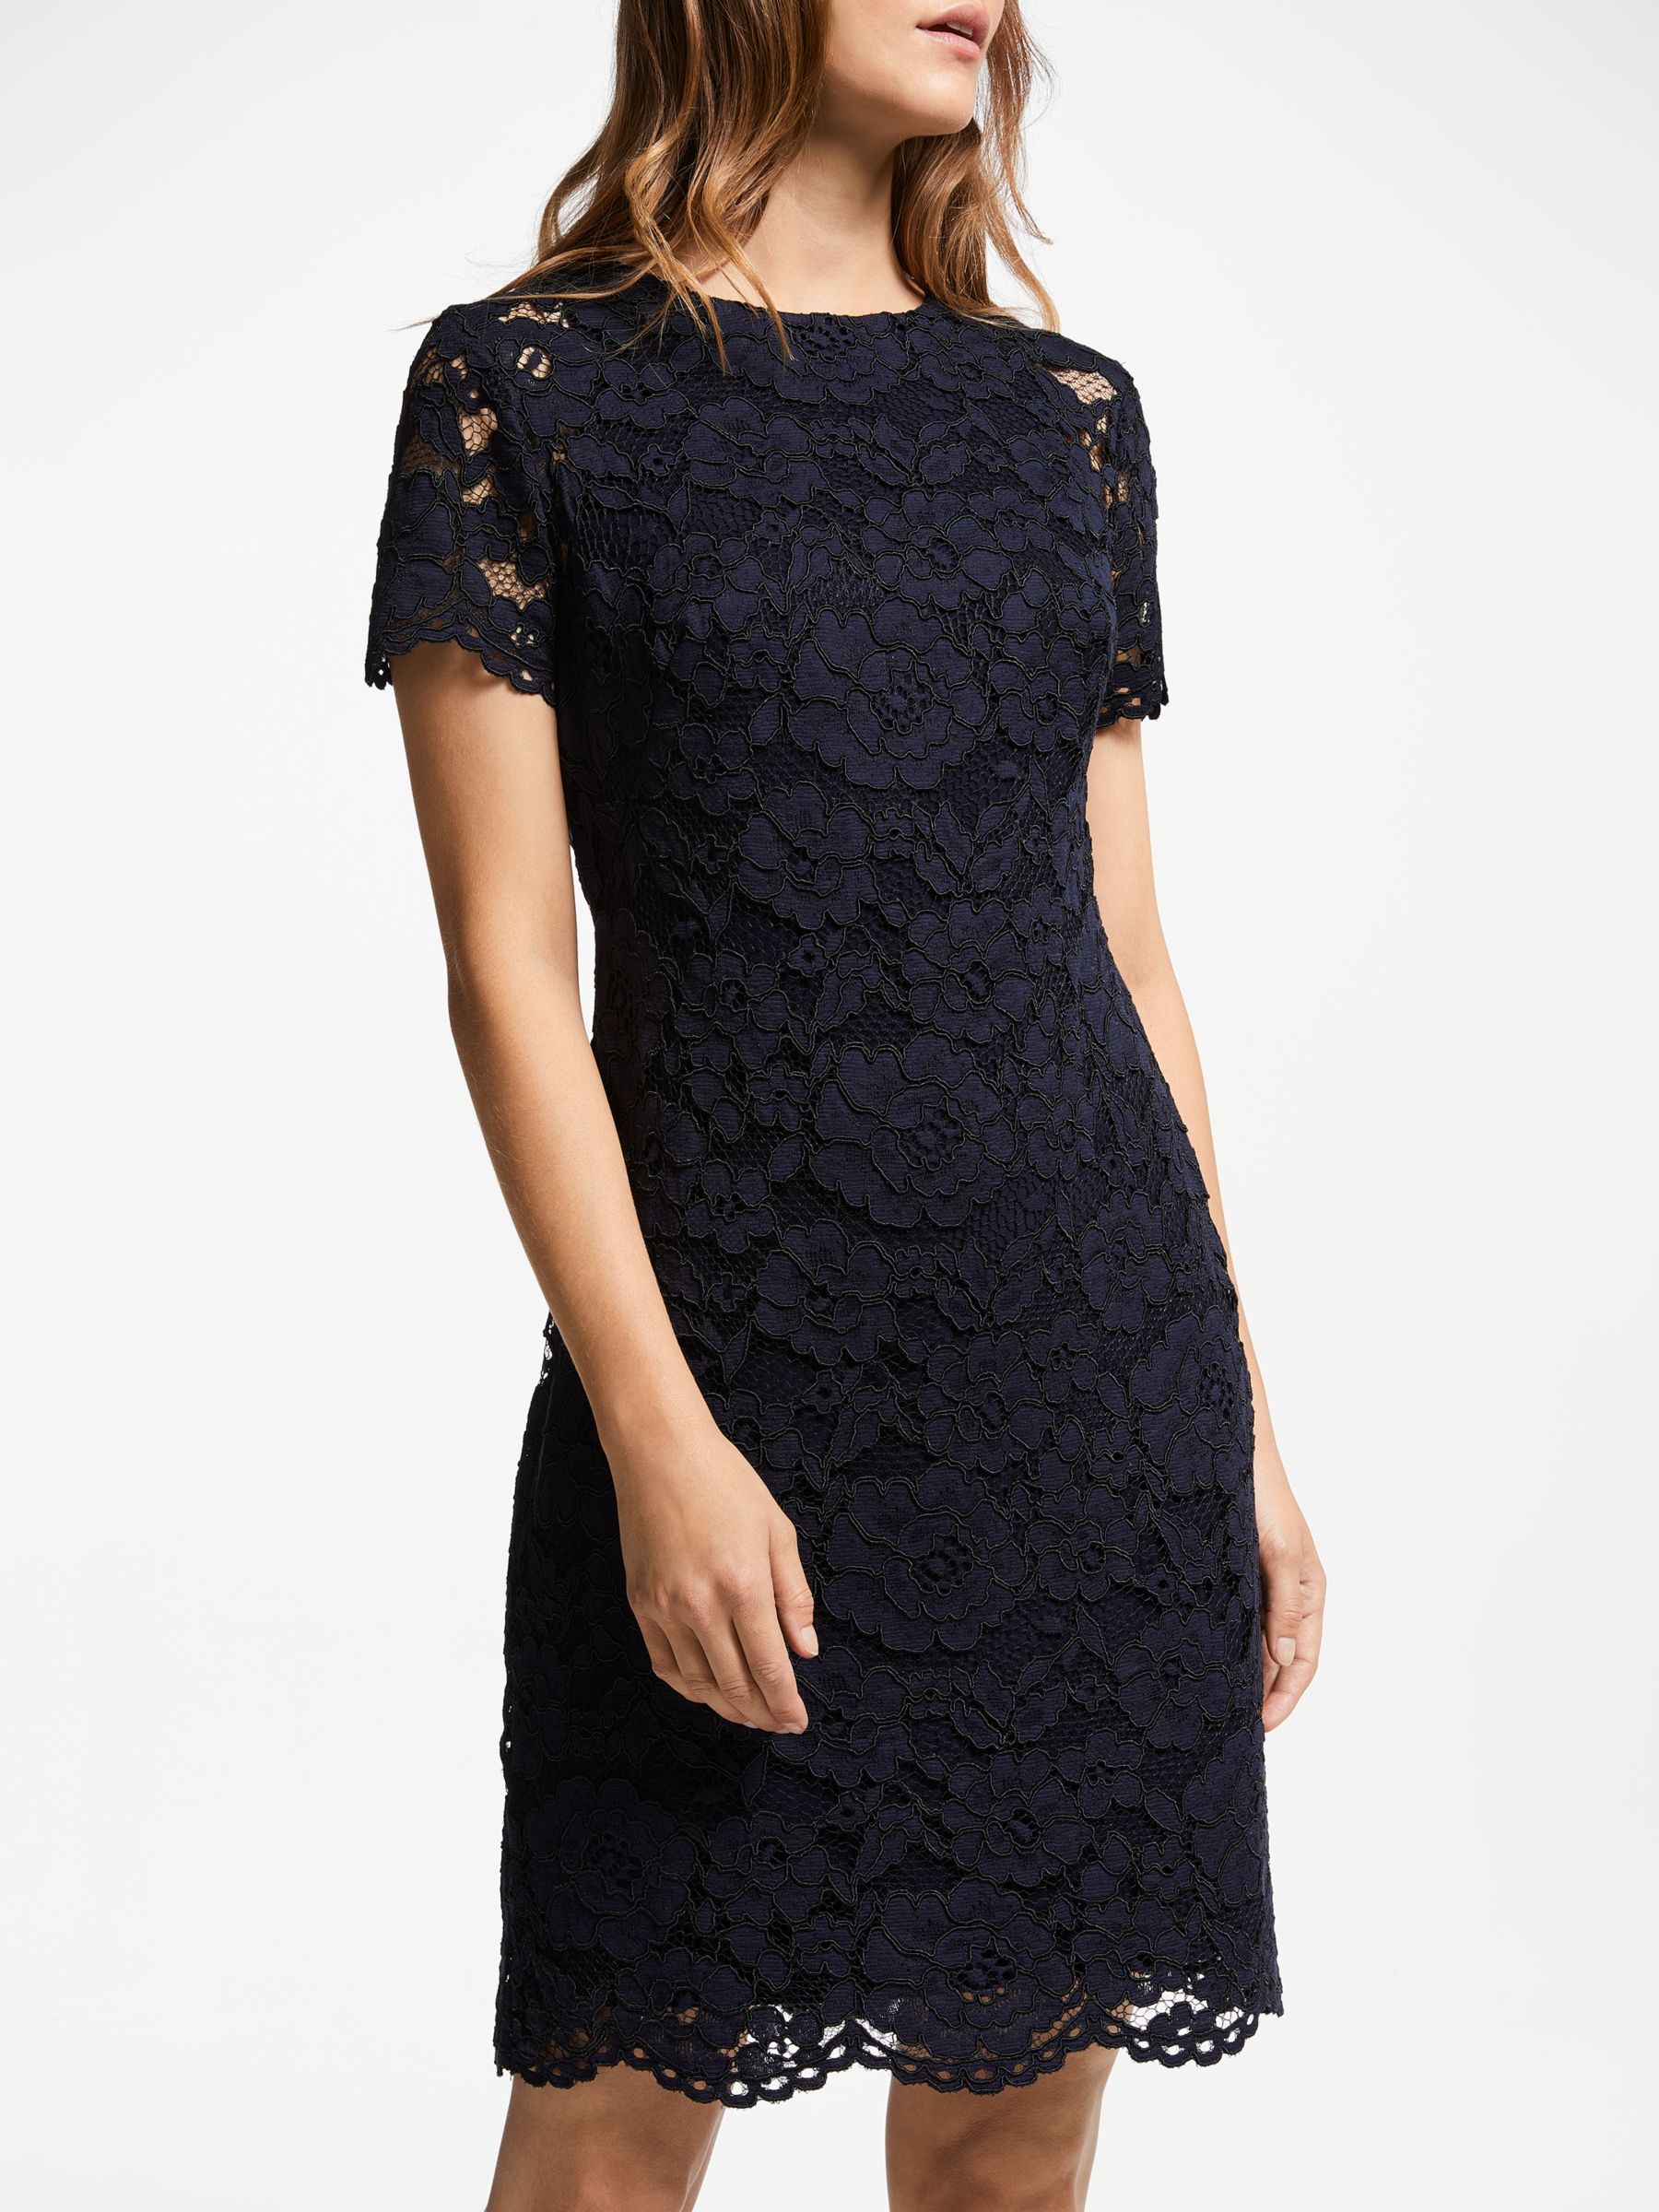 ralph lauren navy blue lace dress